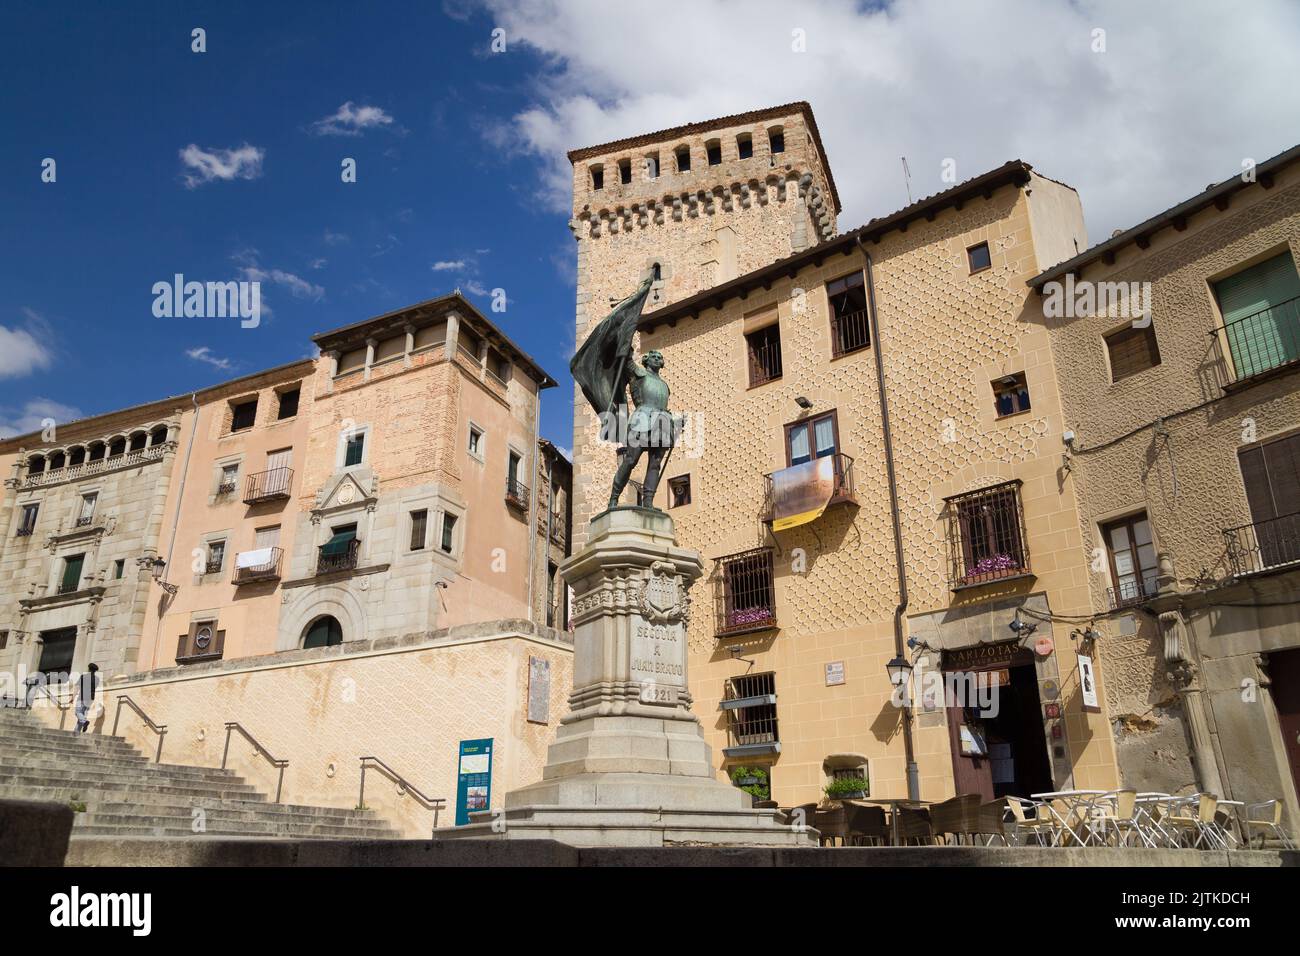 Segovia, Spain - August 21, 2020: Monument to Juan Bravo in Medina del Campo Square, Segovia, Spain. Stock Photo